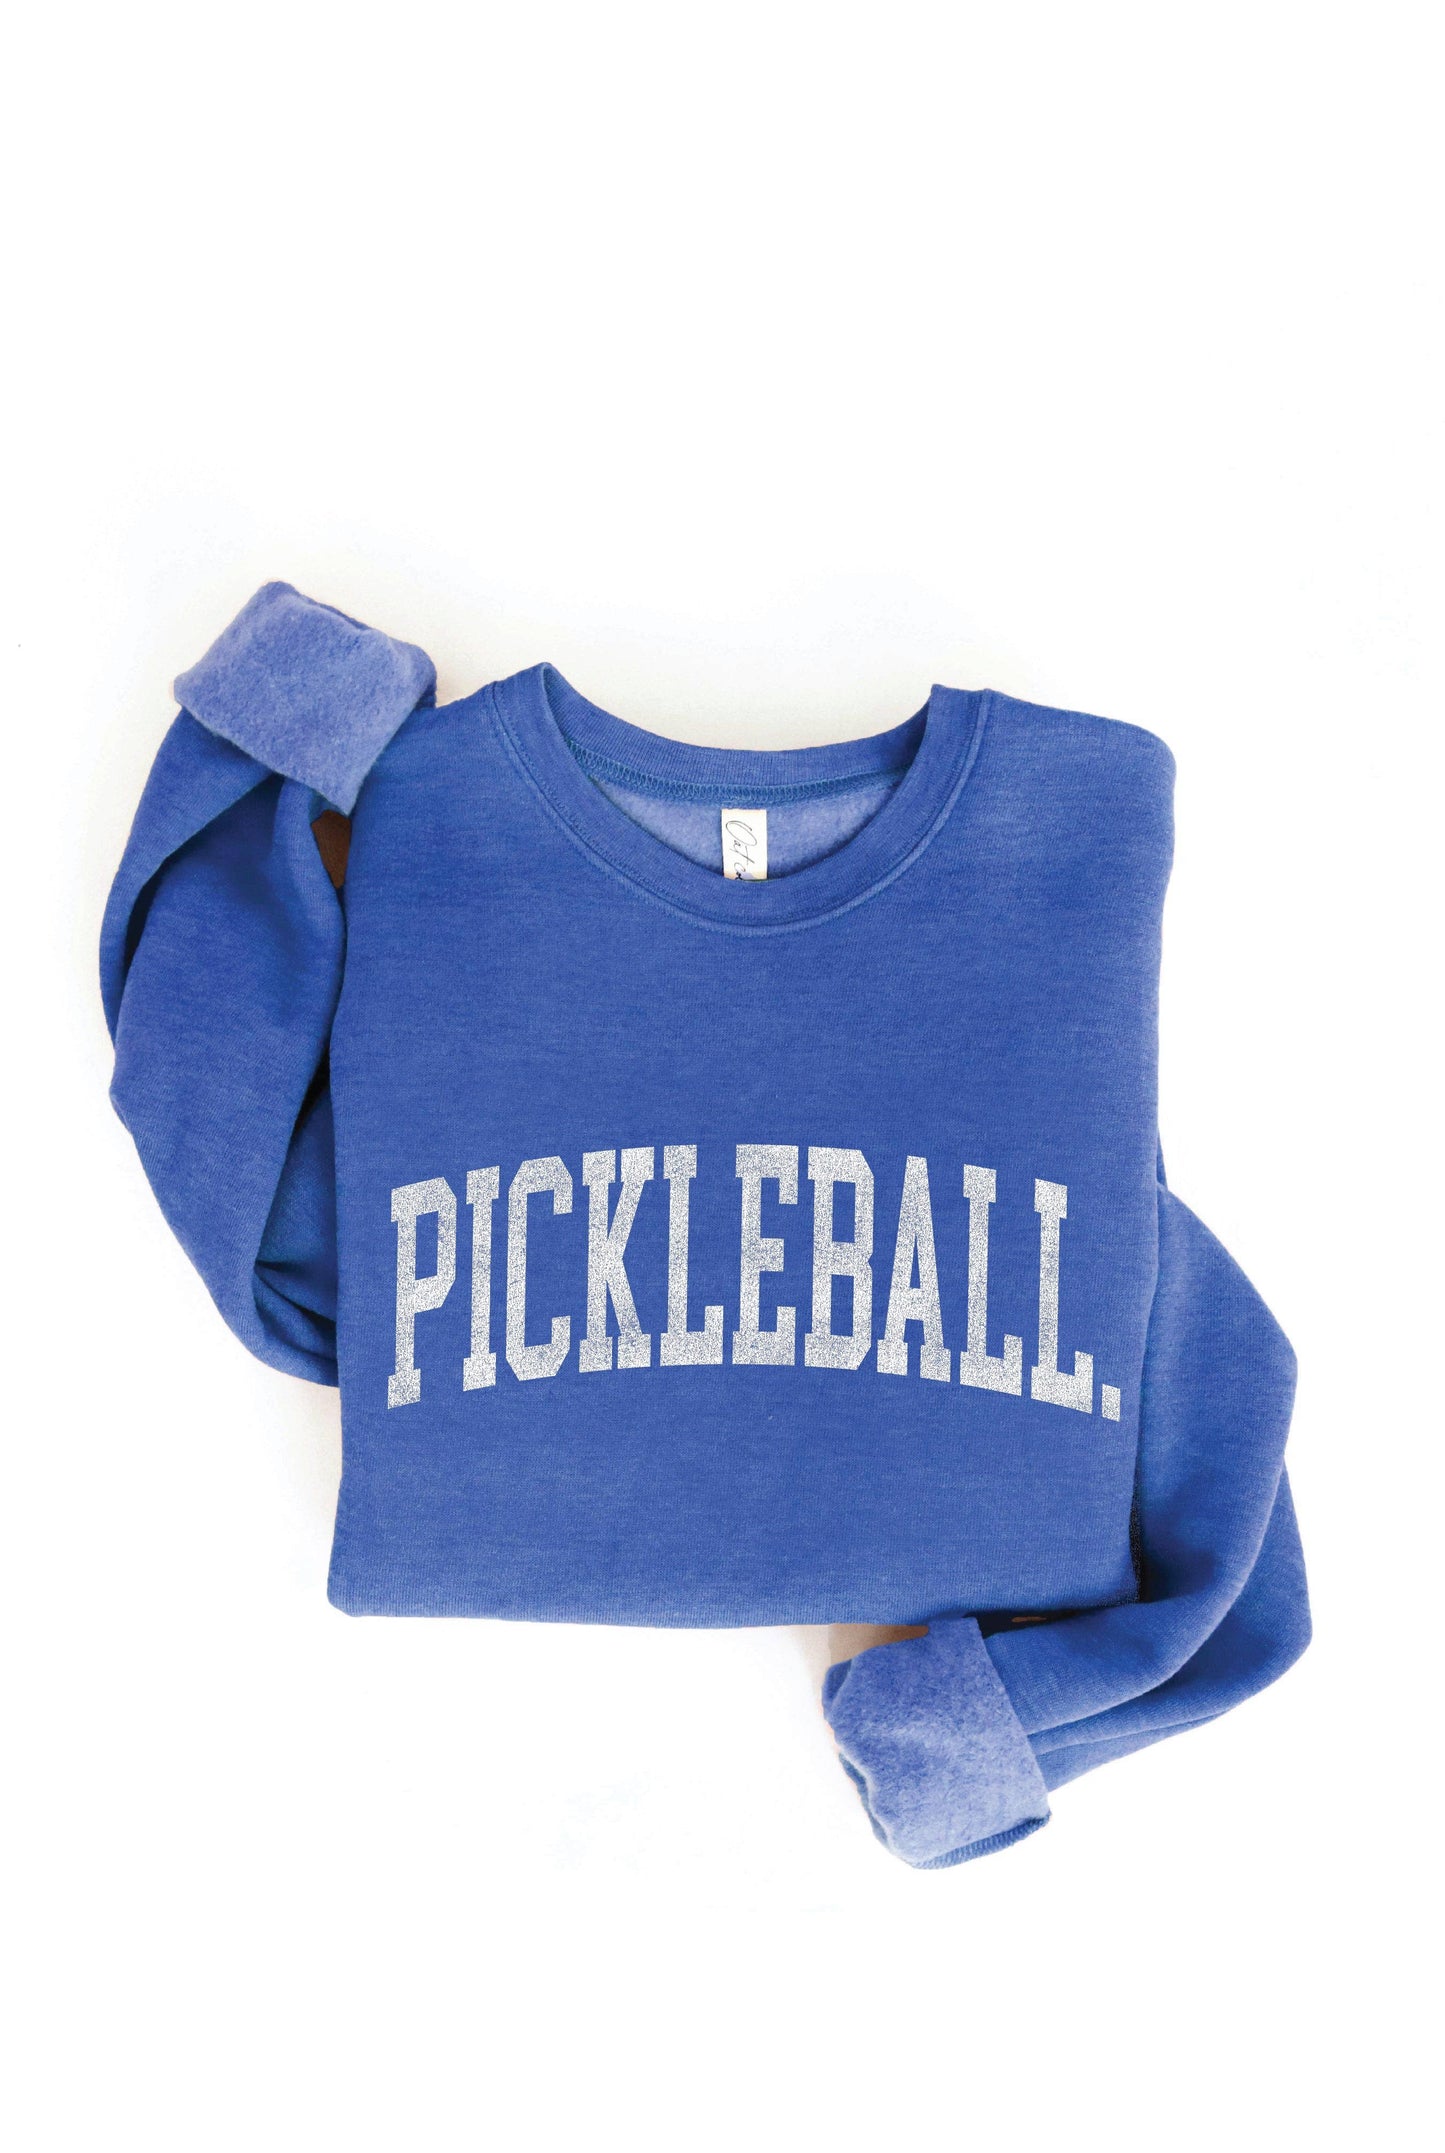 PICKLEBALL Graphic Sweatshirt